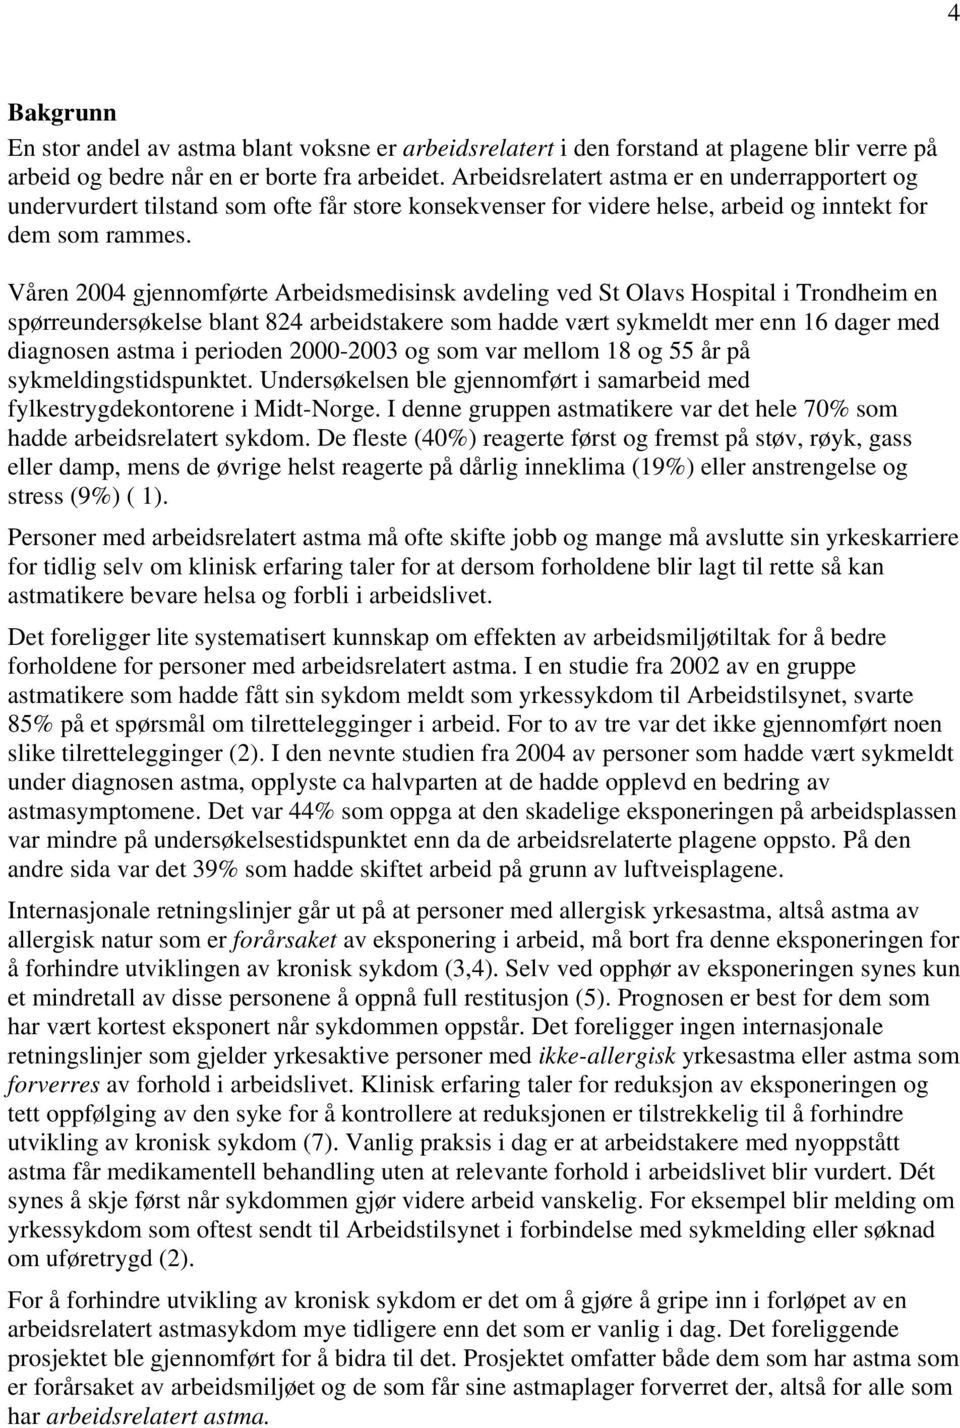 Våren 2004 gjennomførte Arbeidsmedisinsk avdeling ved St Olavs Hospital i Trondheim en spørreundersøkelse blant 824 arbeidstakere som hadde vært sykmeldt mer enn 16 dager med diagnosen astma i